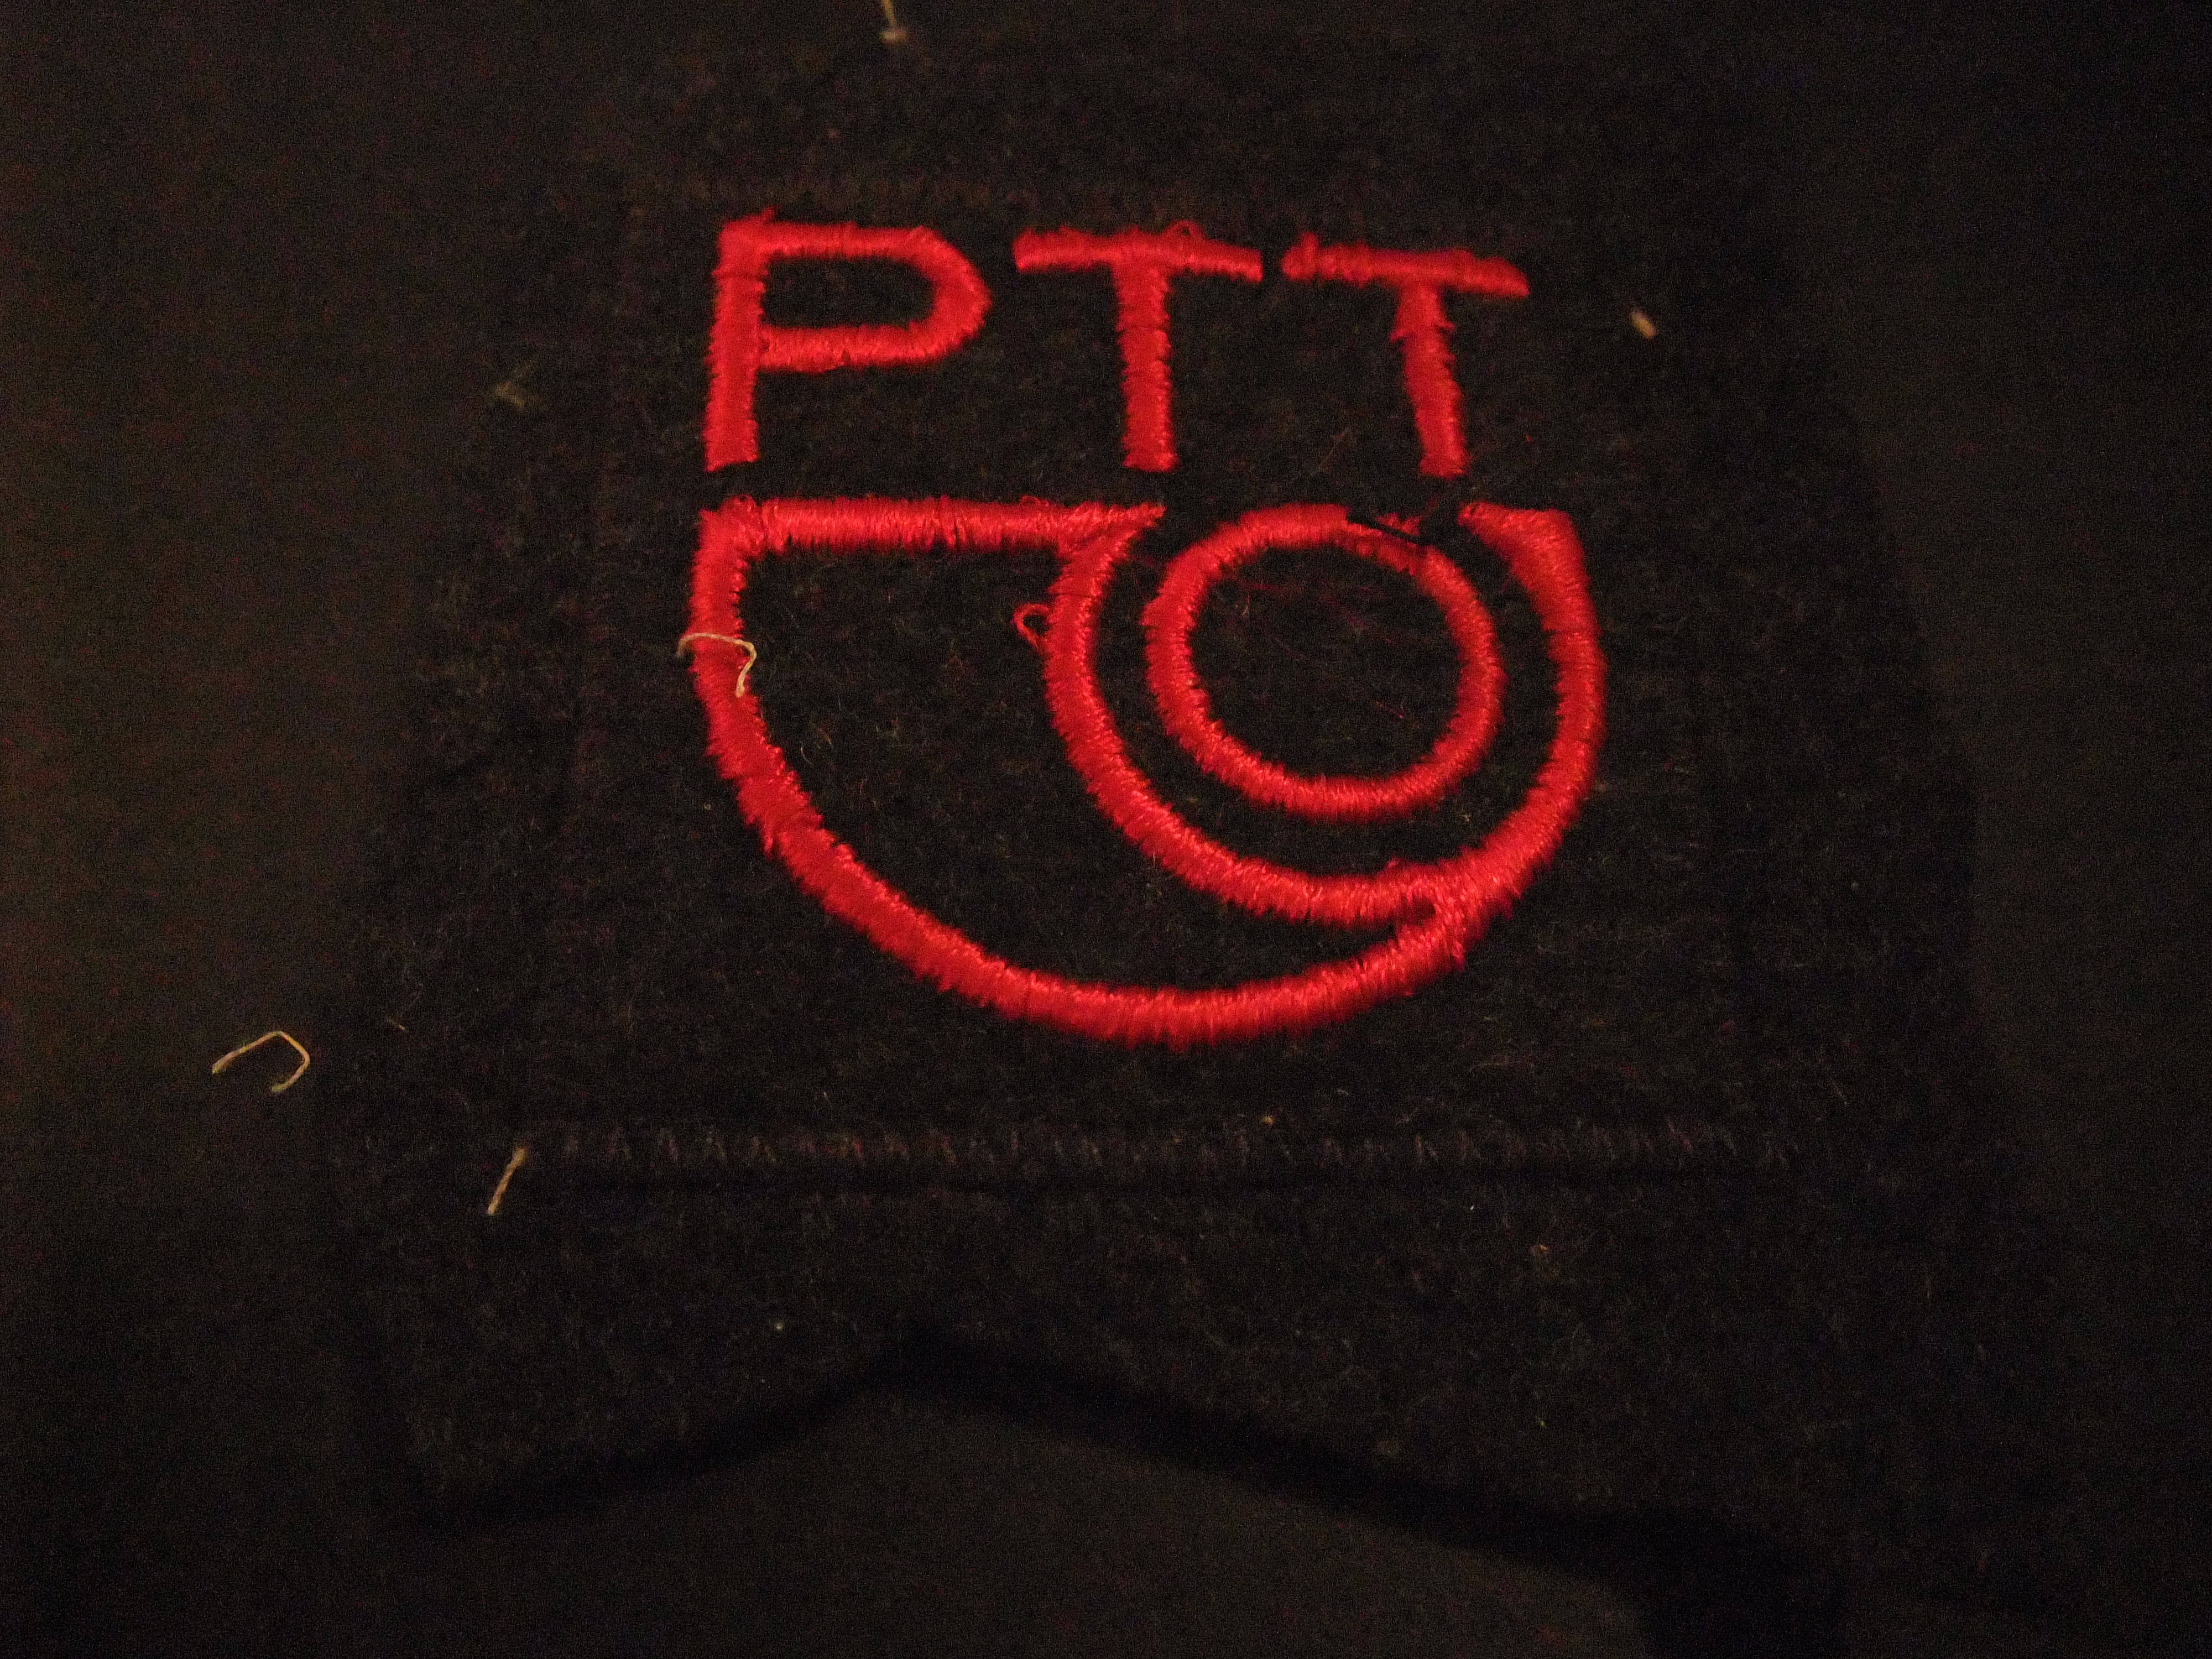 PTT opnaaiembleem met oud logo post